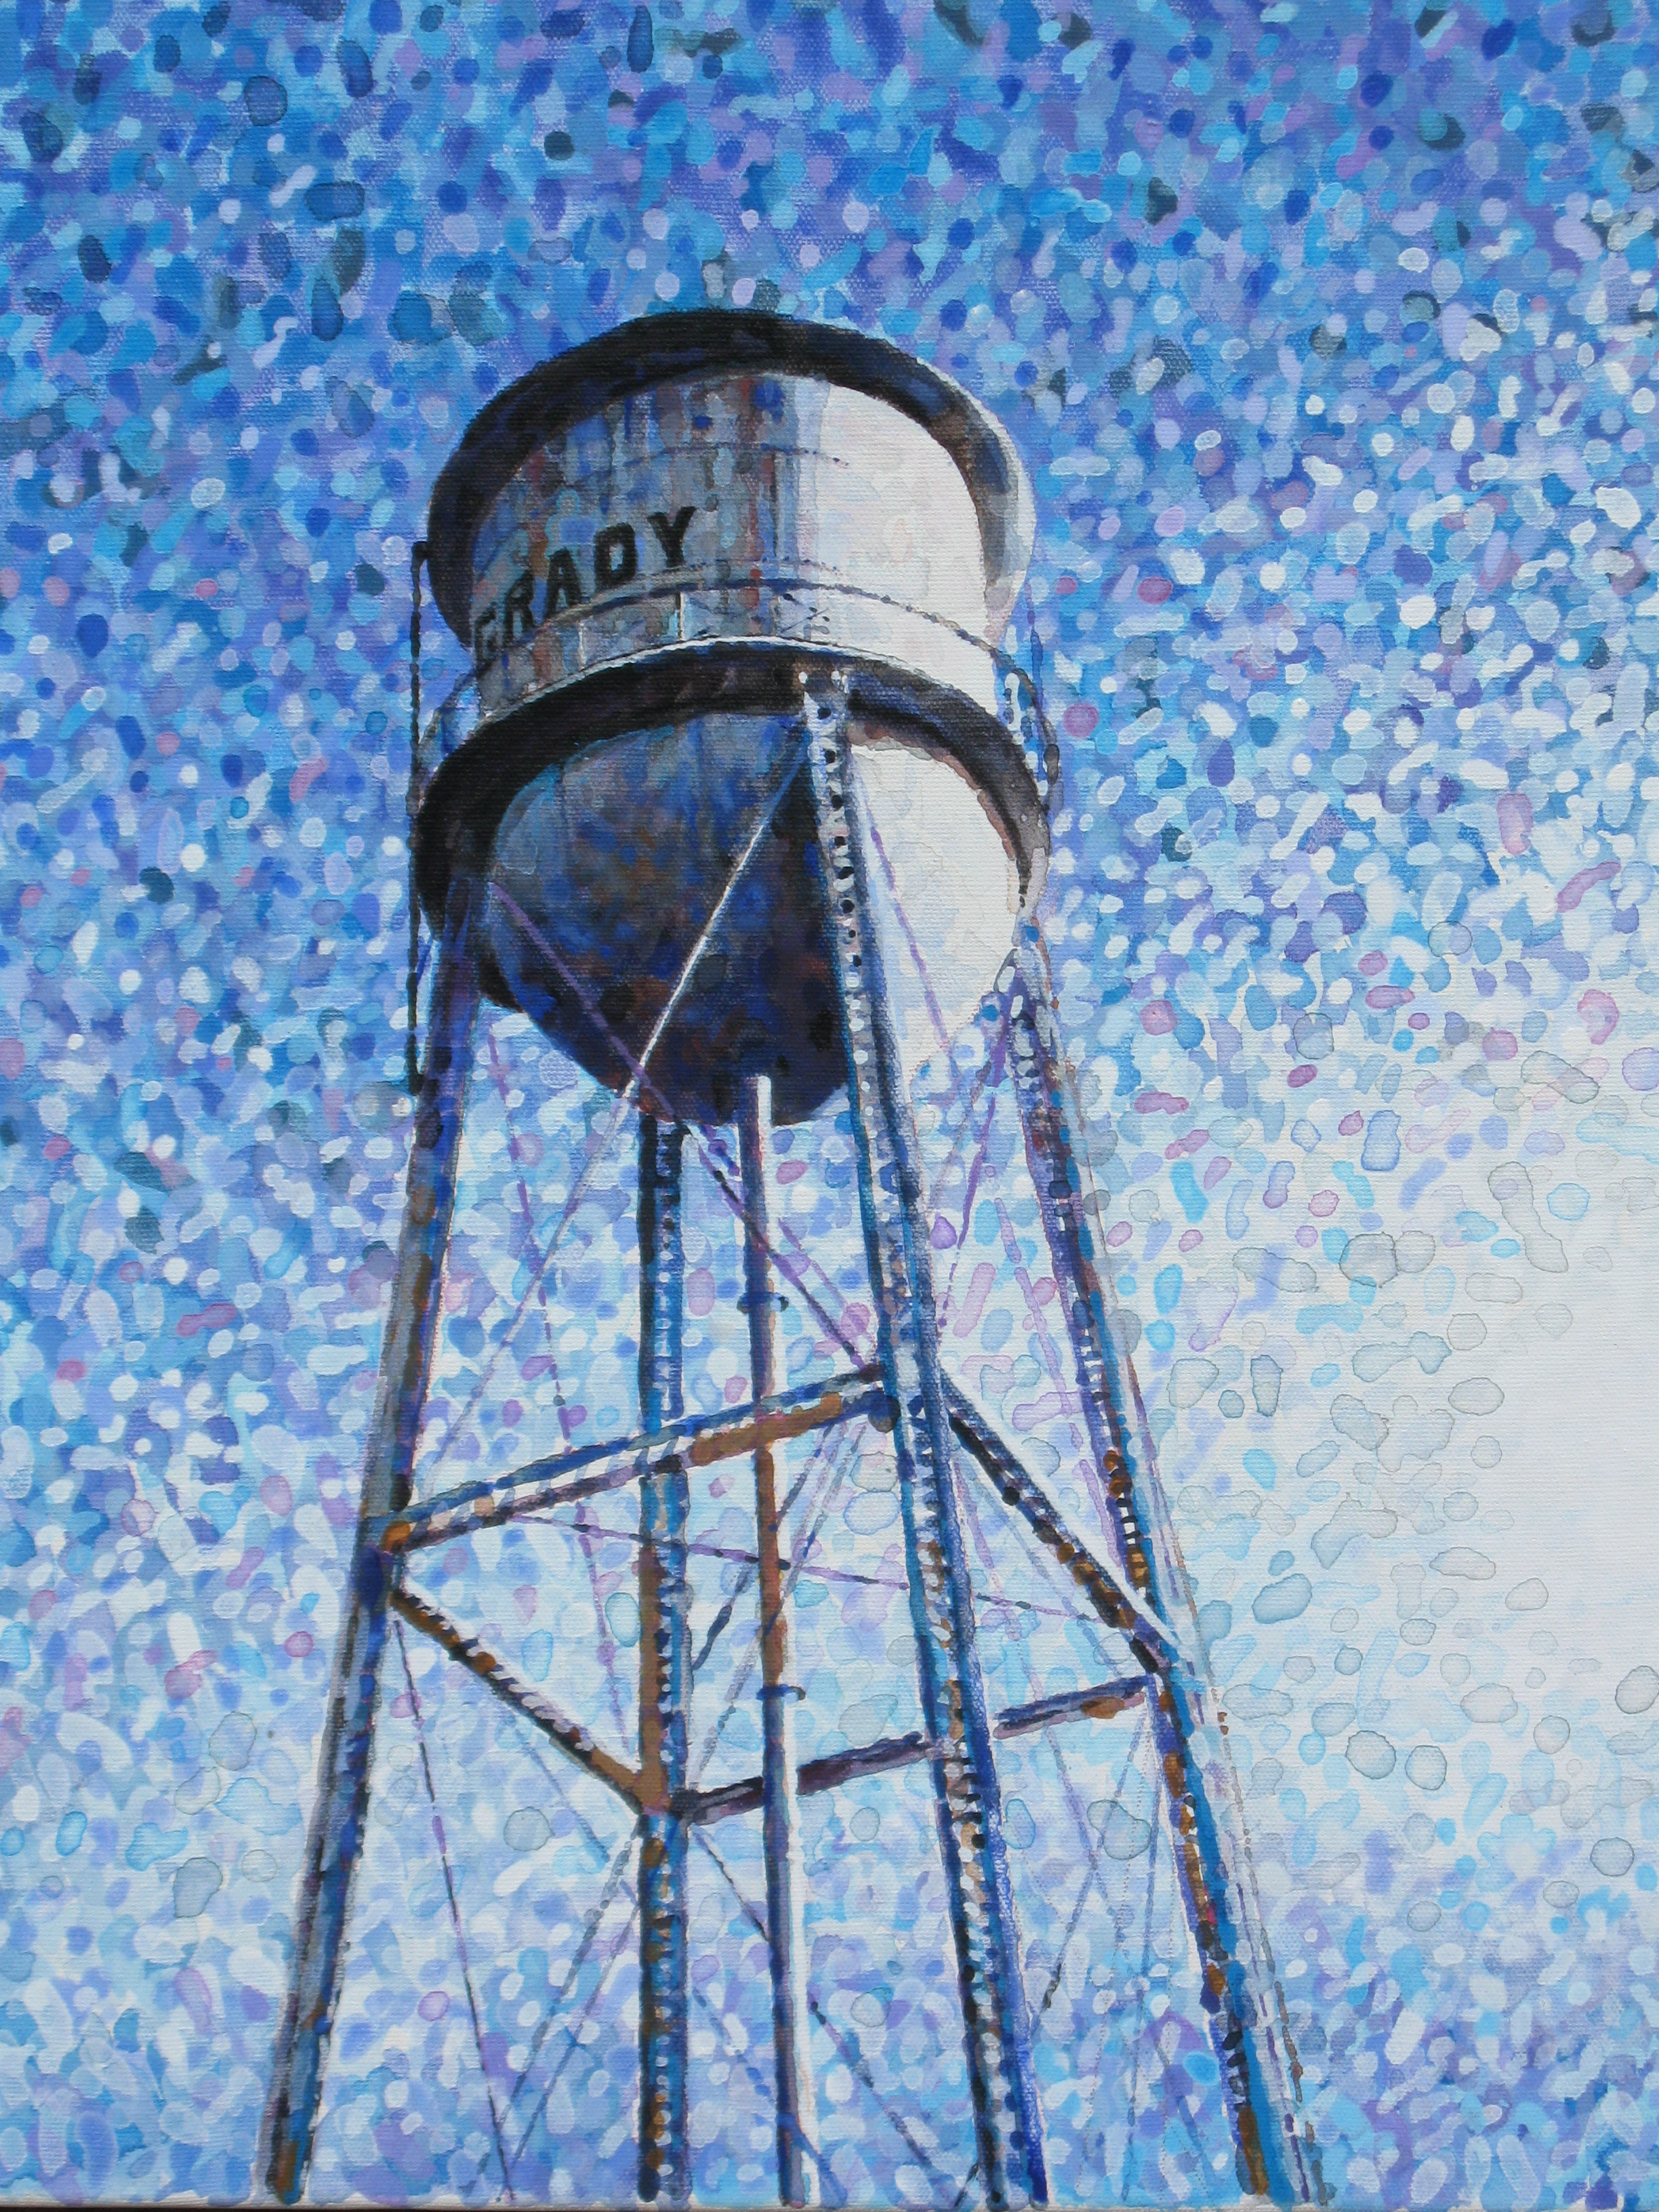 Water tower in Grady, AR